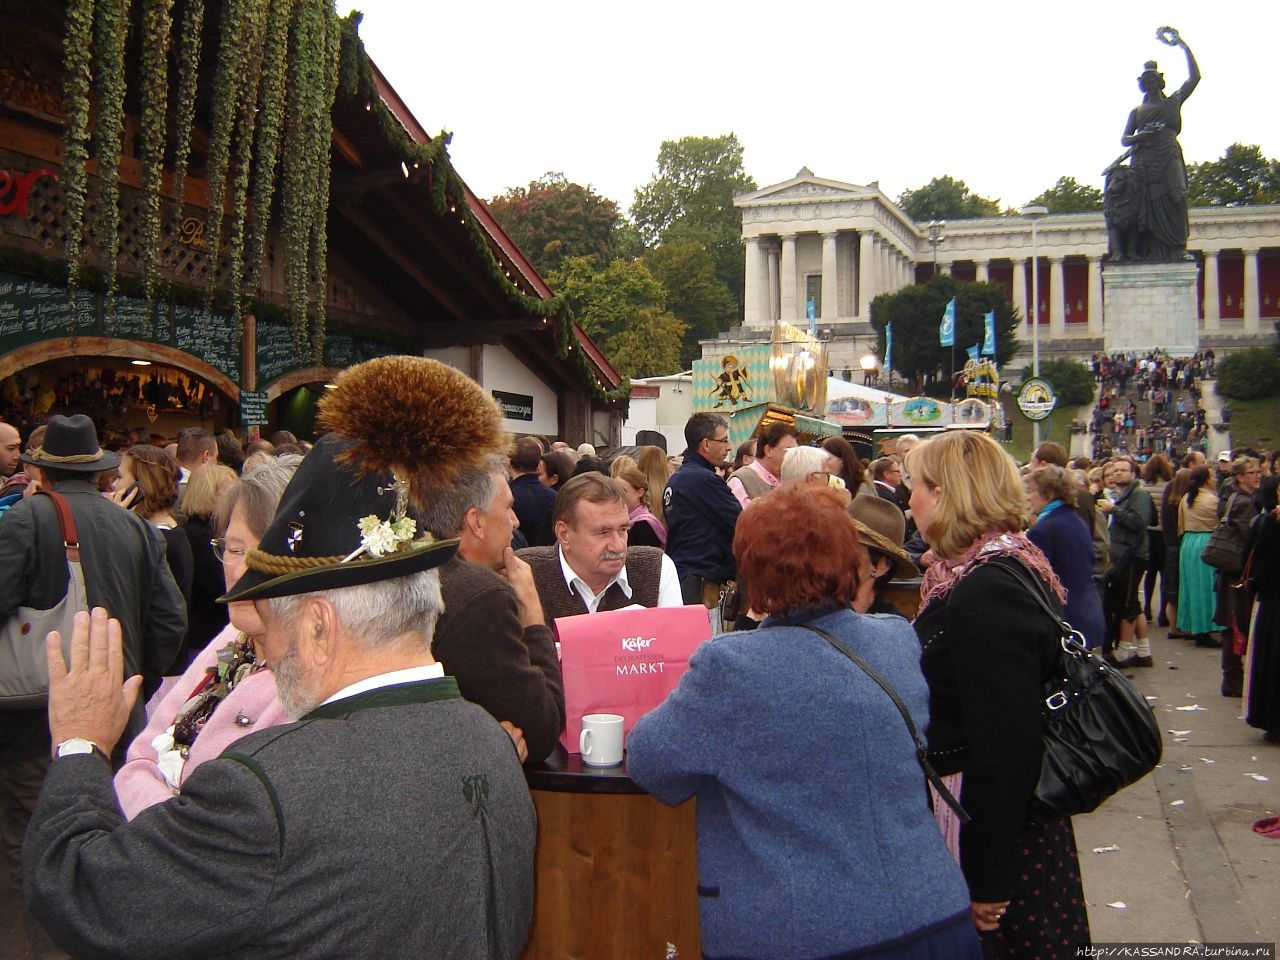 На фестивале Октоберфест голодным не останешься Мюнхен, Германия